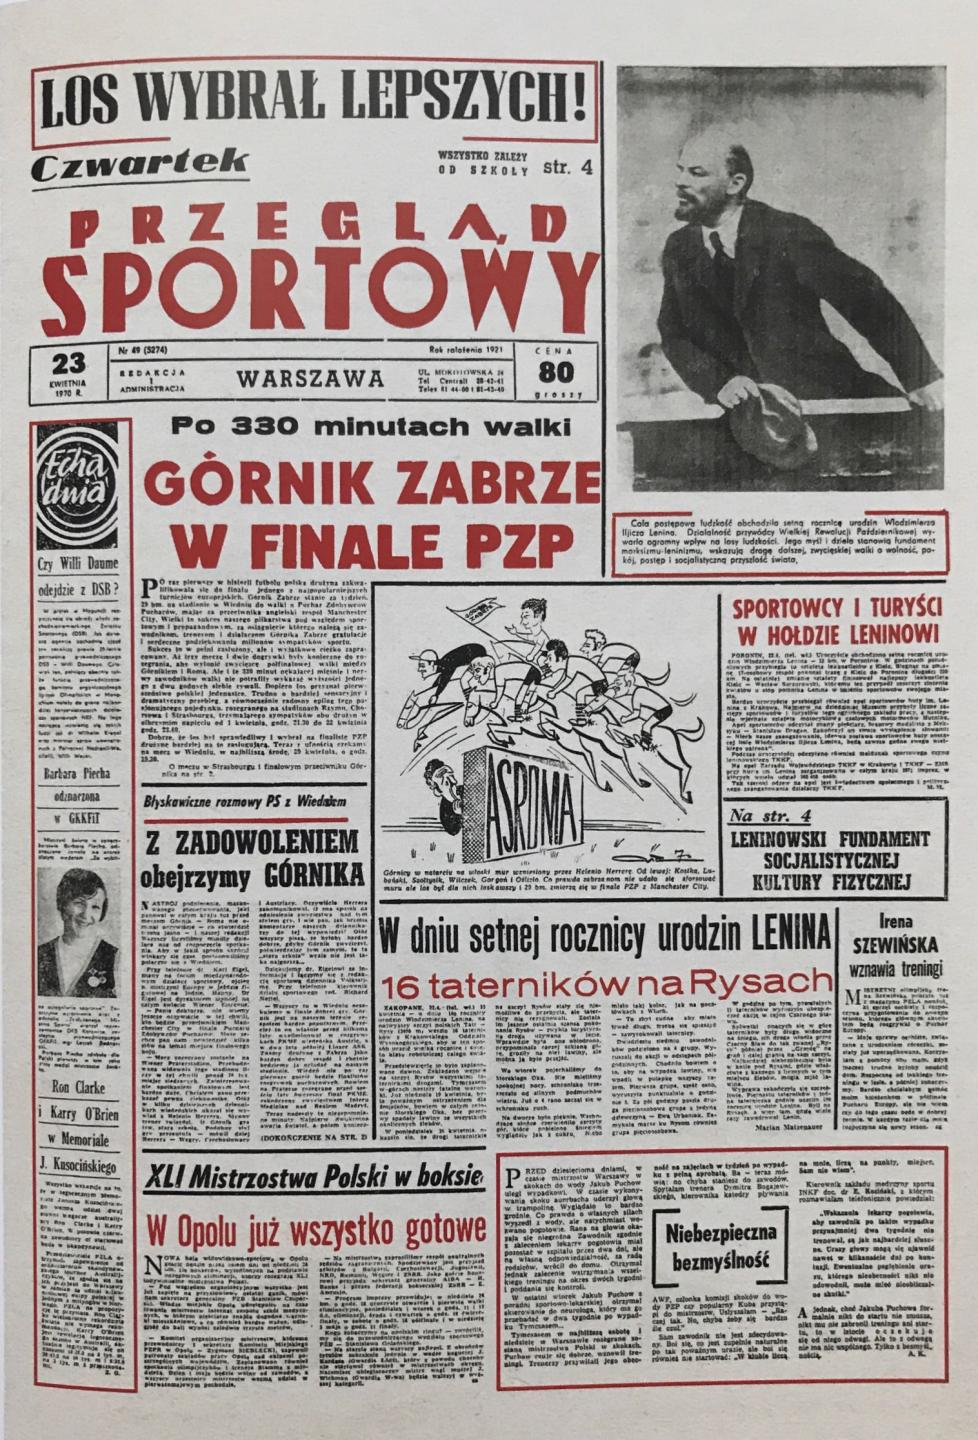 Okładka Przegląd Sportowy po meczu AS Roma - Górnik Zabrze (22.04.1970).